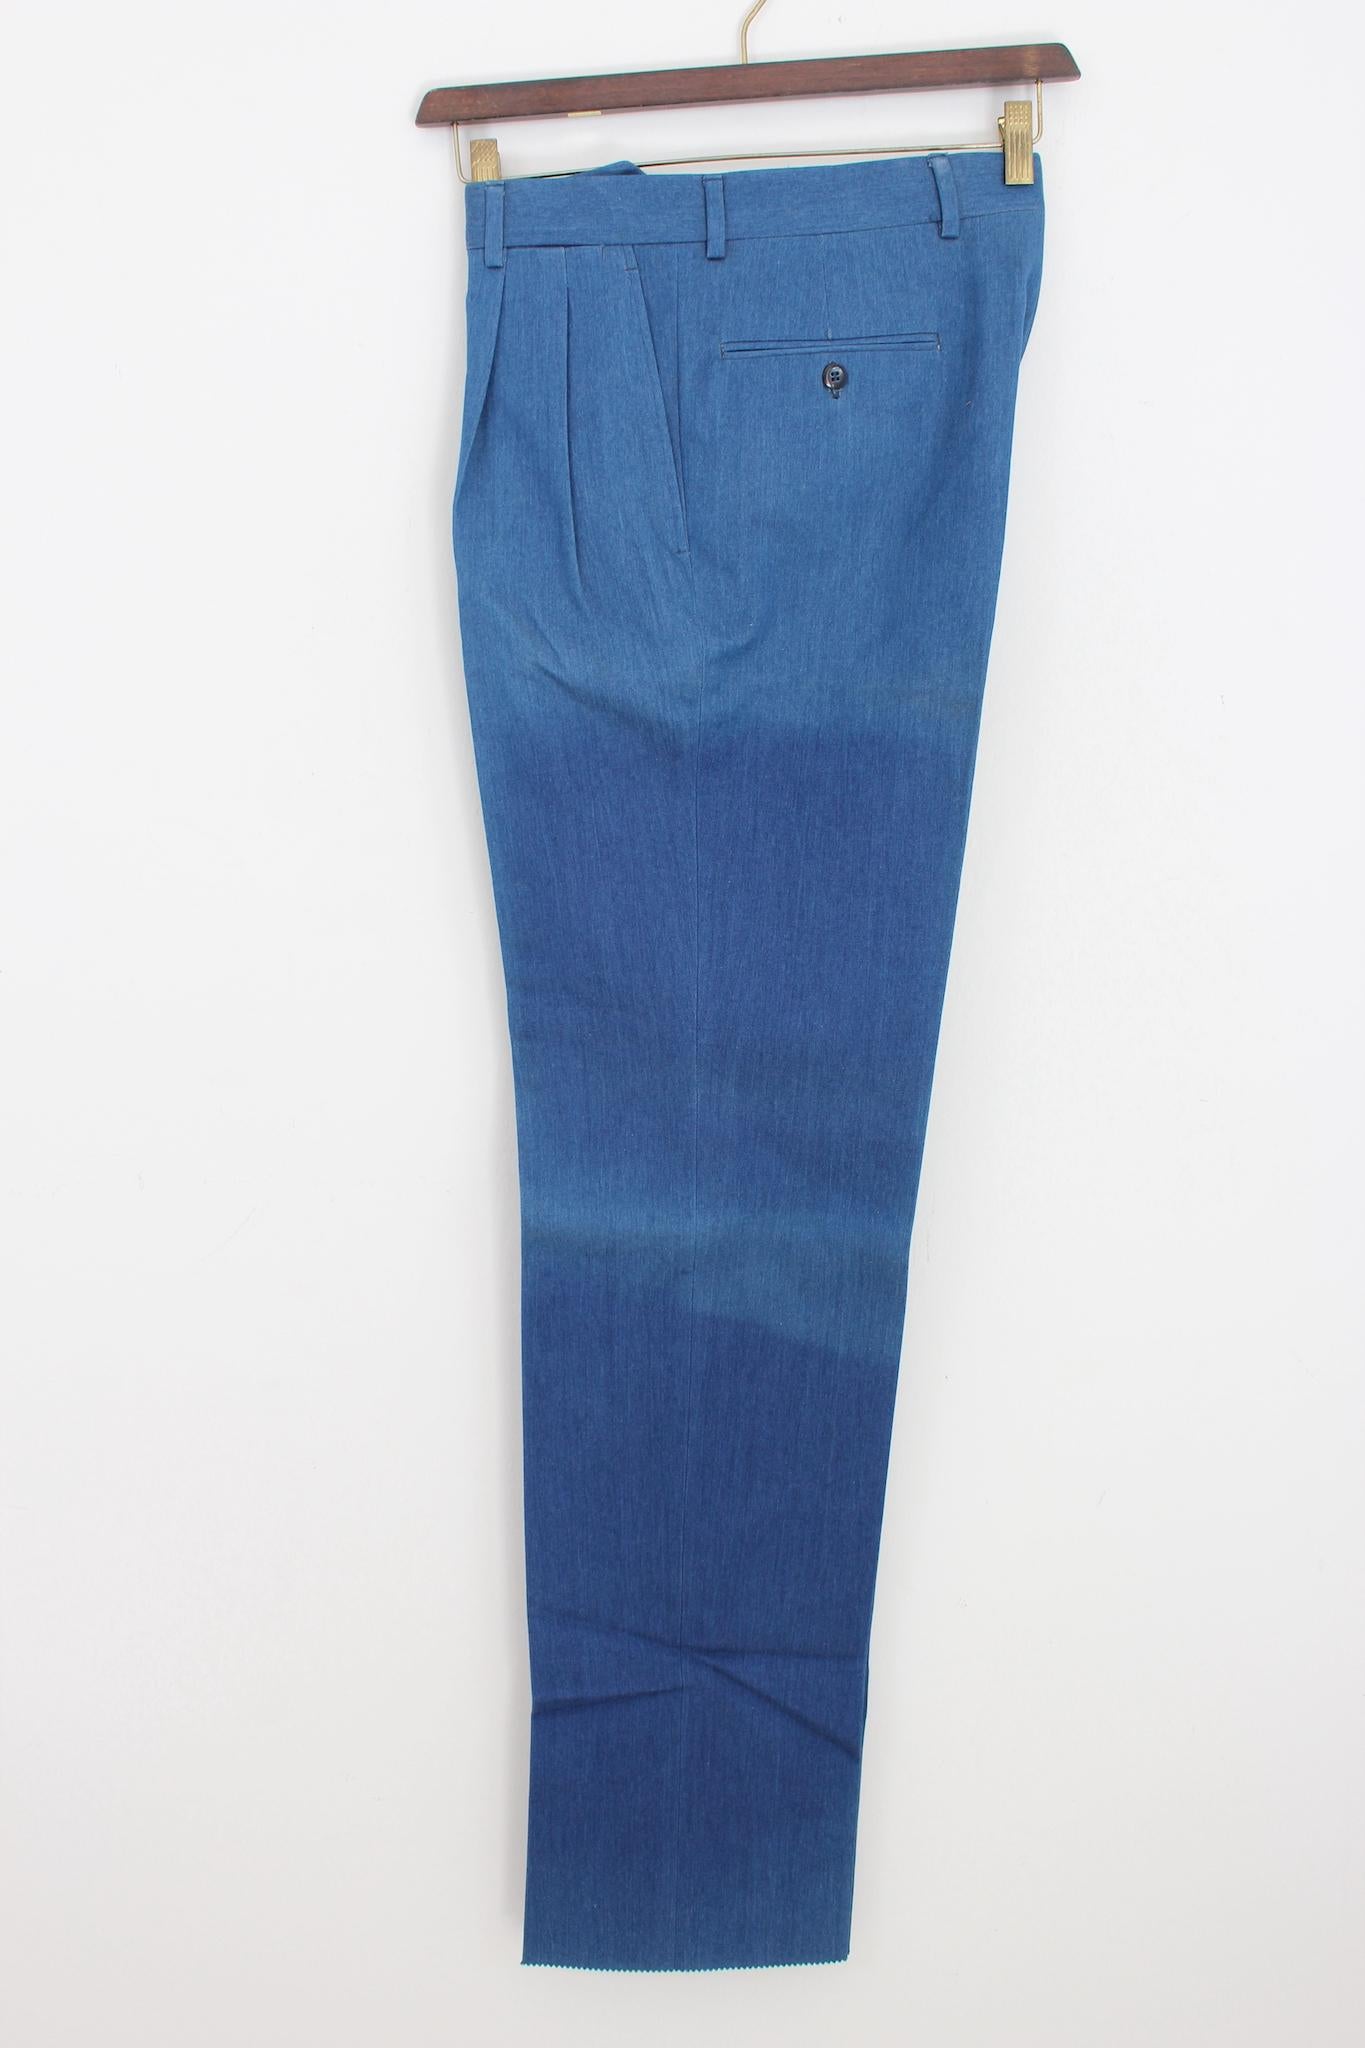 Pantalon en jean vintage Brioni des années 90. Modèle à jambes droites, taille haute, couleur bleue, tissu 100% coton. Fabriquées en Italie. Neuf sans étiquette, provenant du stock de l'entrepôt. Le pantalon a quelques parties décolorées.

Taille :